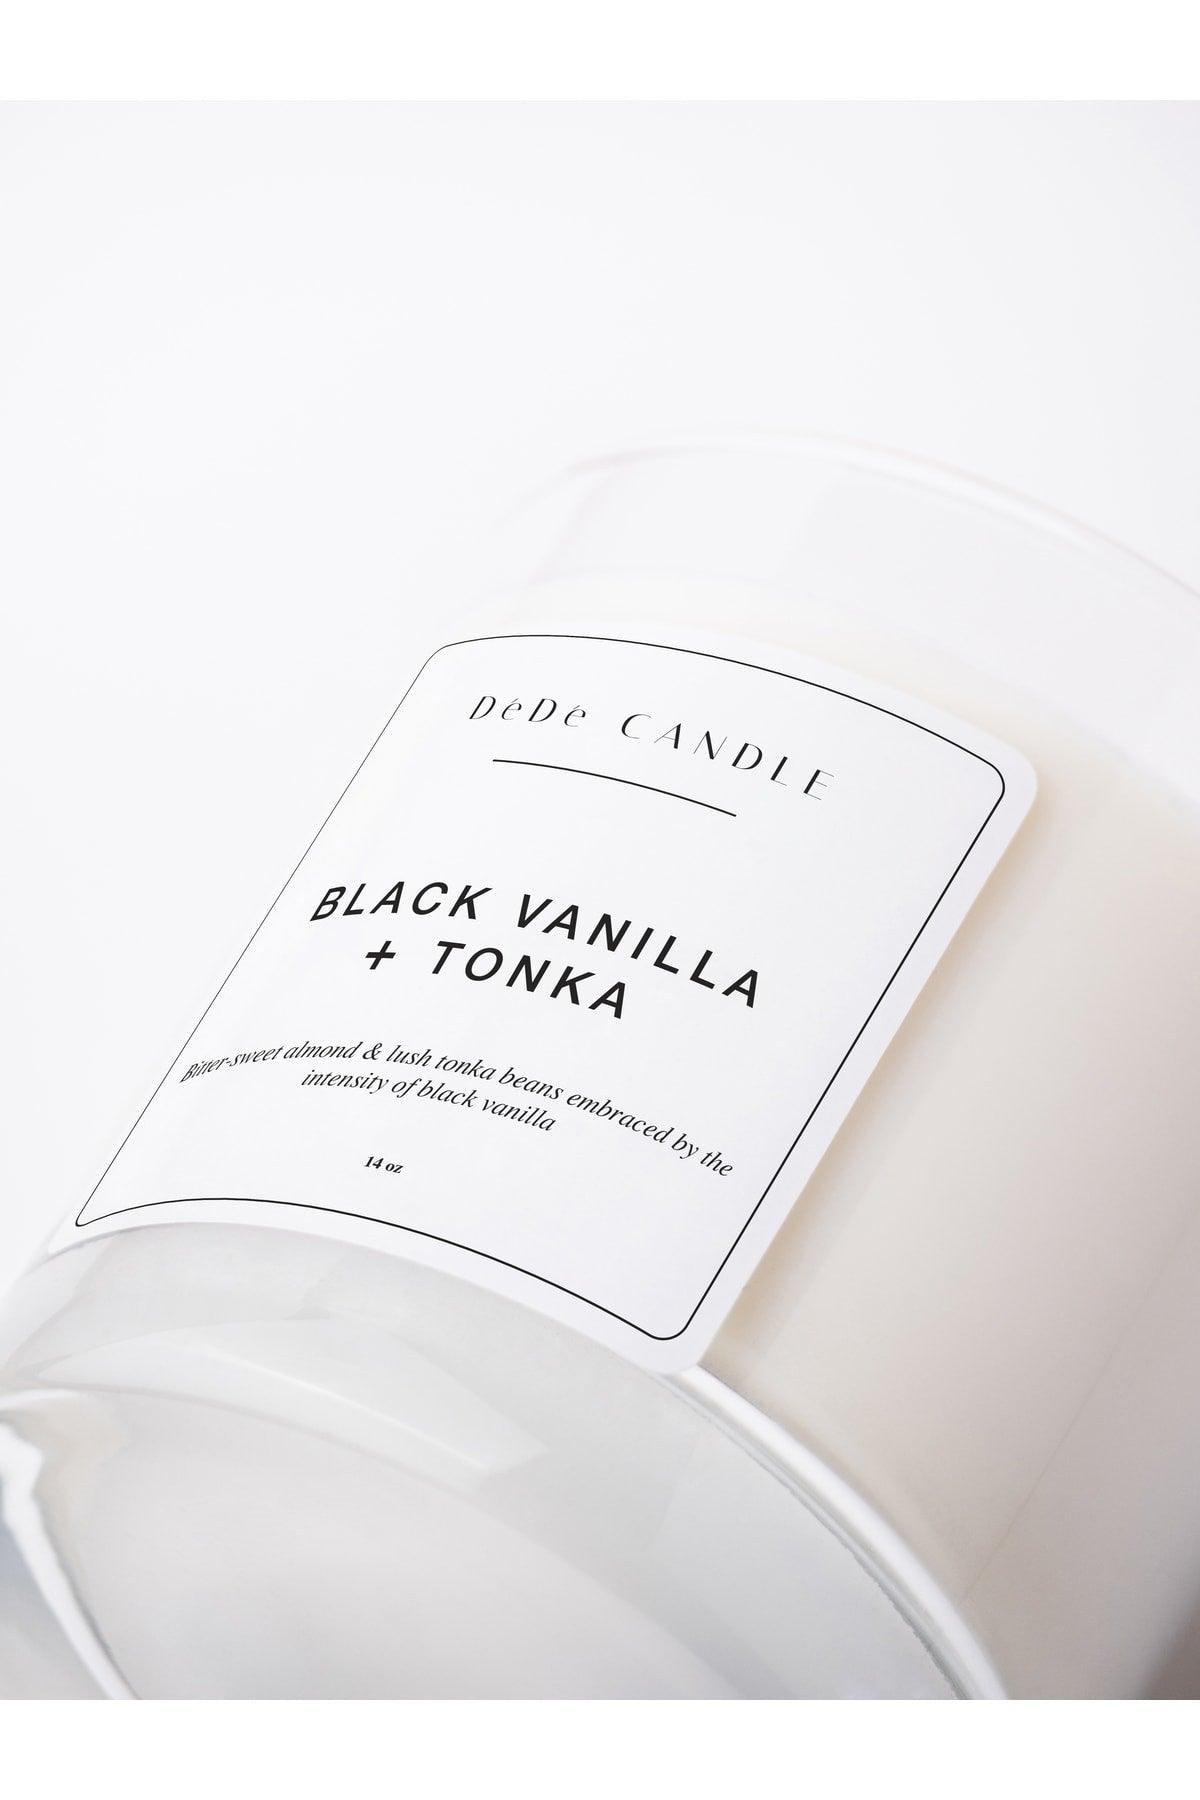 Black Vanilla Tonka Bean Soy Wax | Black Vanilla Tonka Aromatherapy Candle - Swordslife